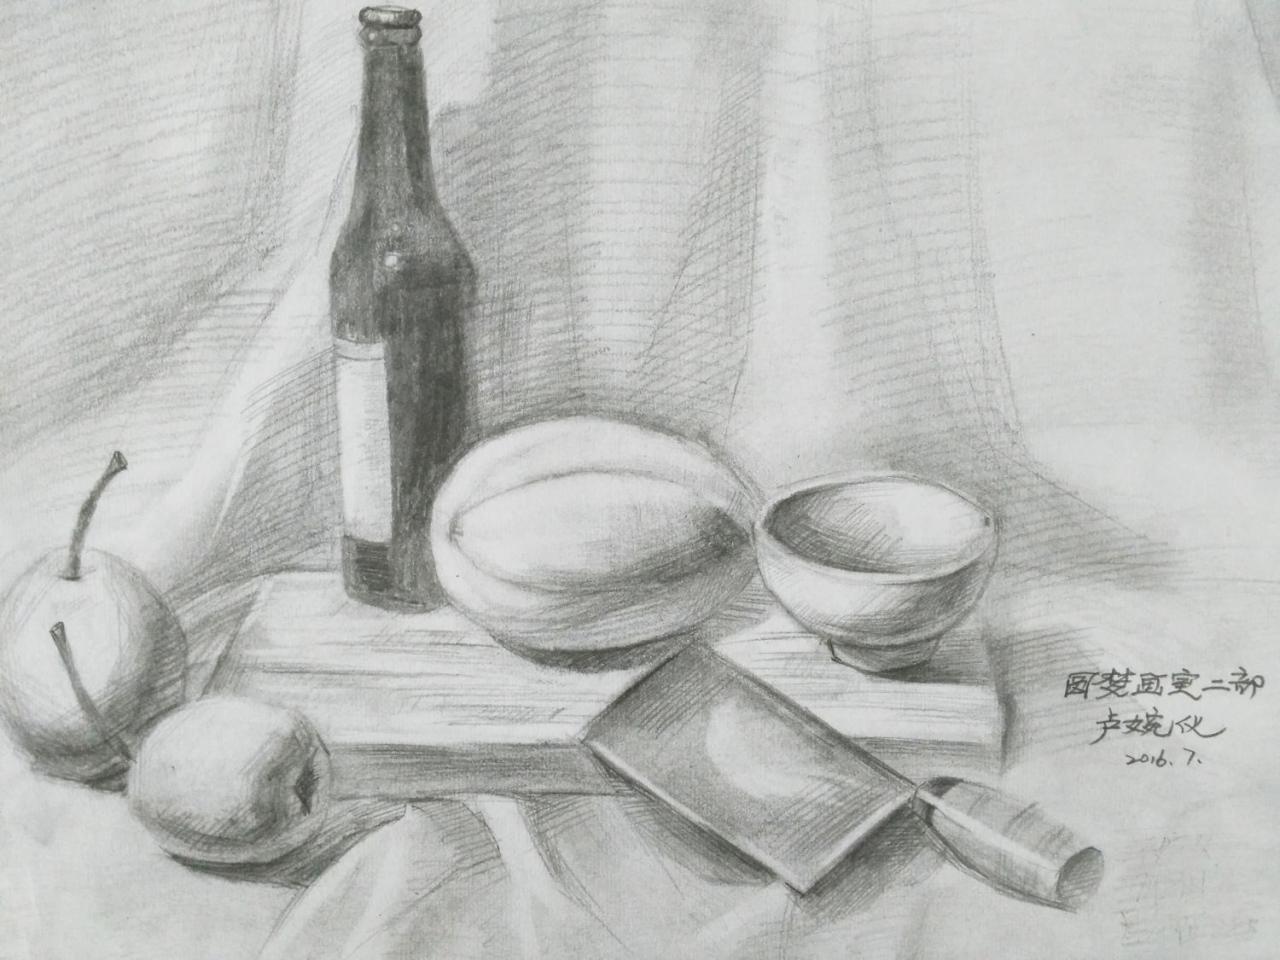 酒瓶、菜板、碗、香瓜、菜刀、梨 静物素描 卢婉仪画